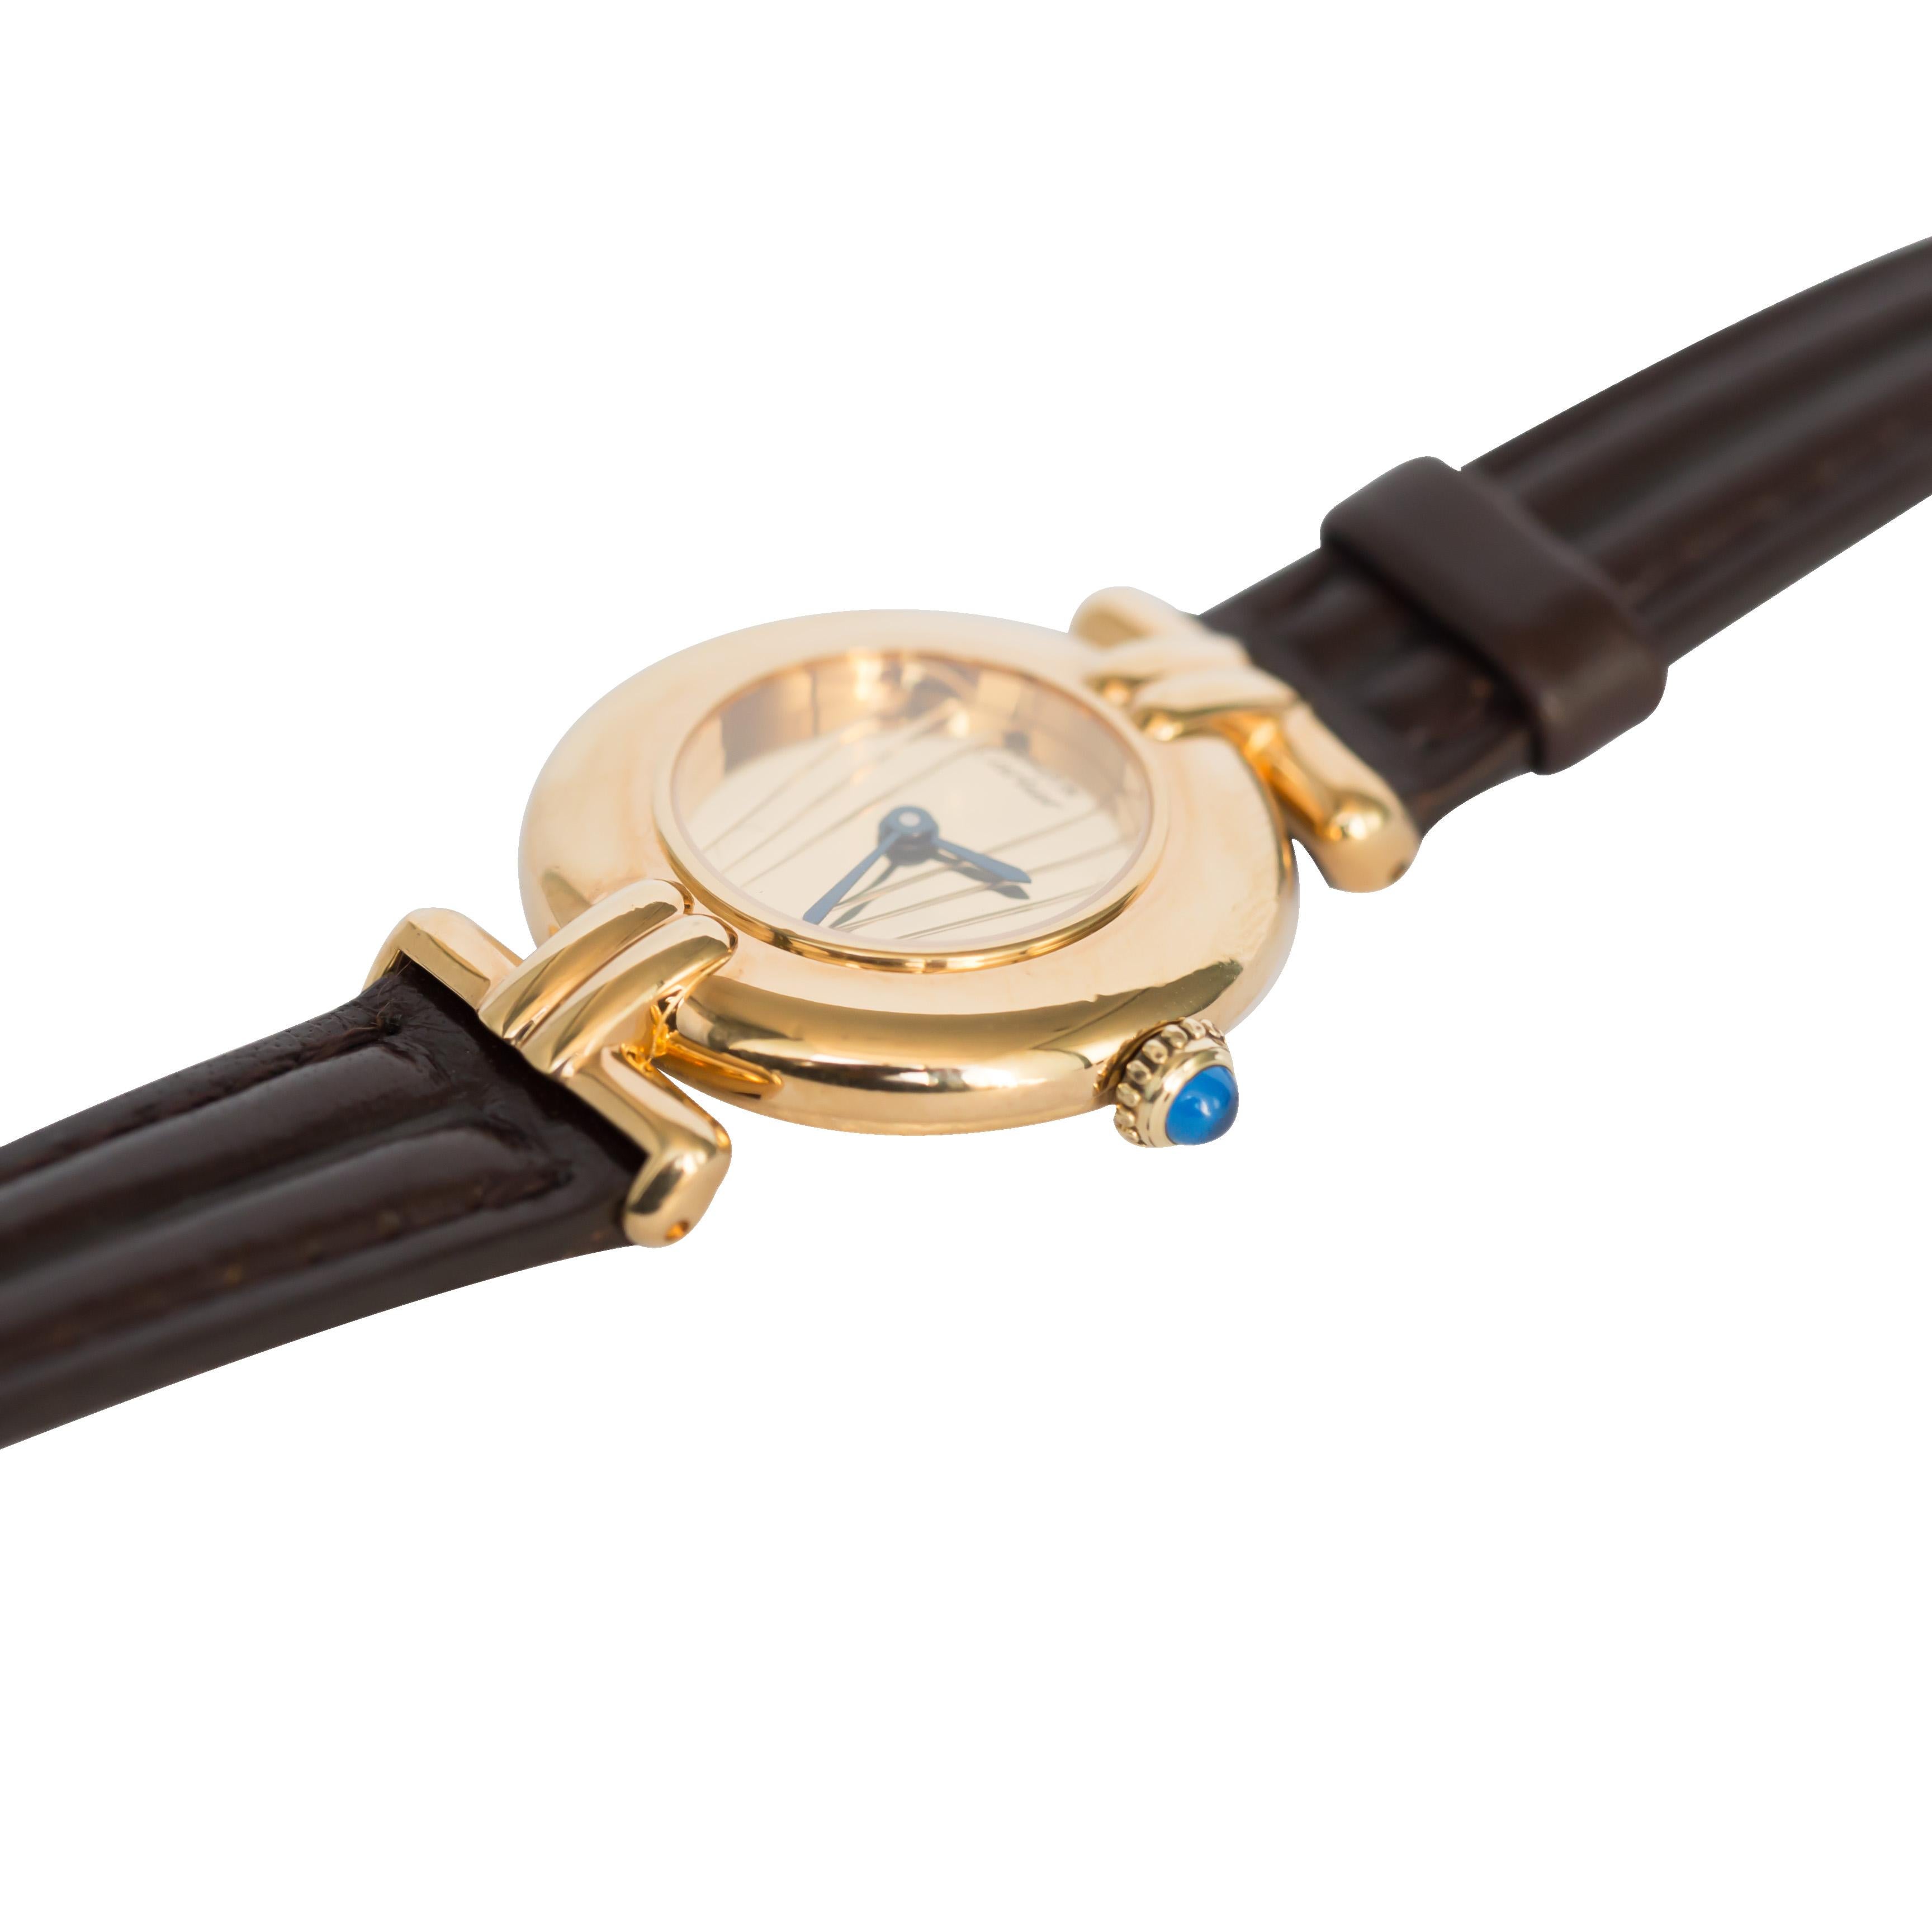 Watch Details: 
Swiss Made
Movement: Quartz

Bracelet Details:
Length: 8 inches
Metal: Vermeil
Width: 5.66mm
Weight: 19.3 grams